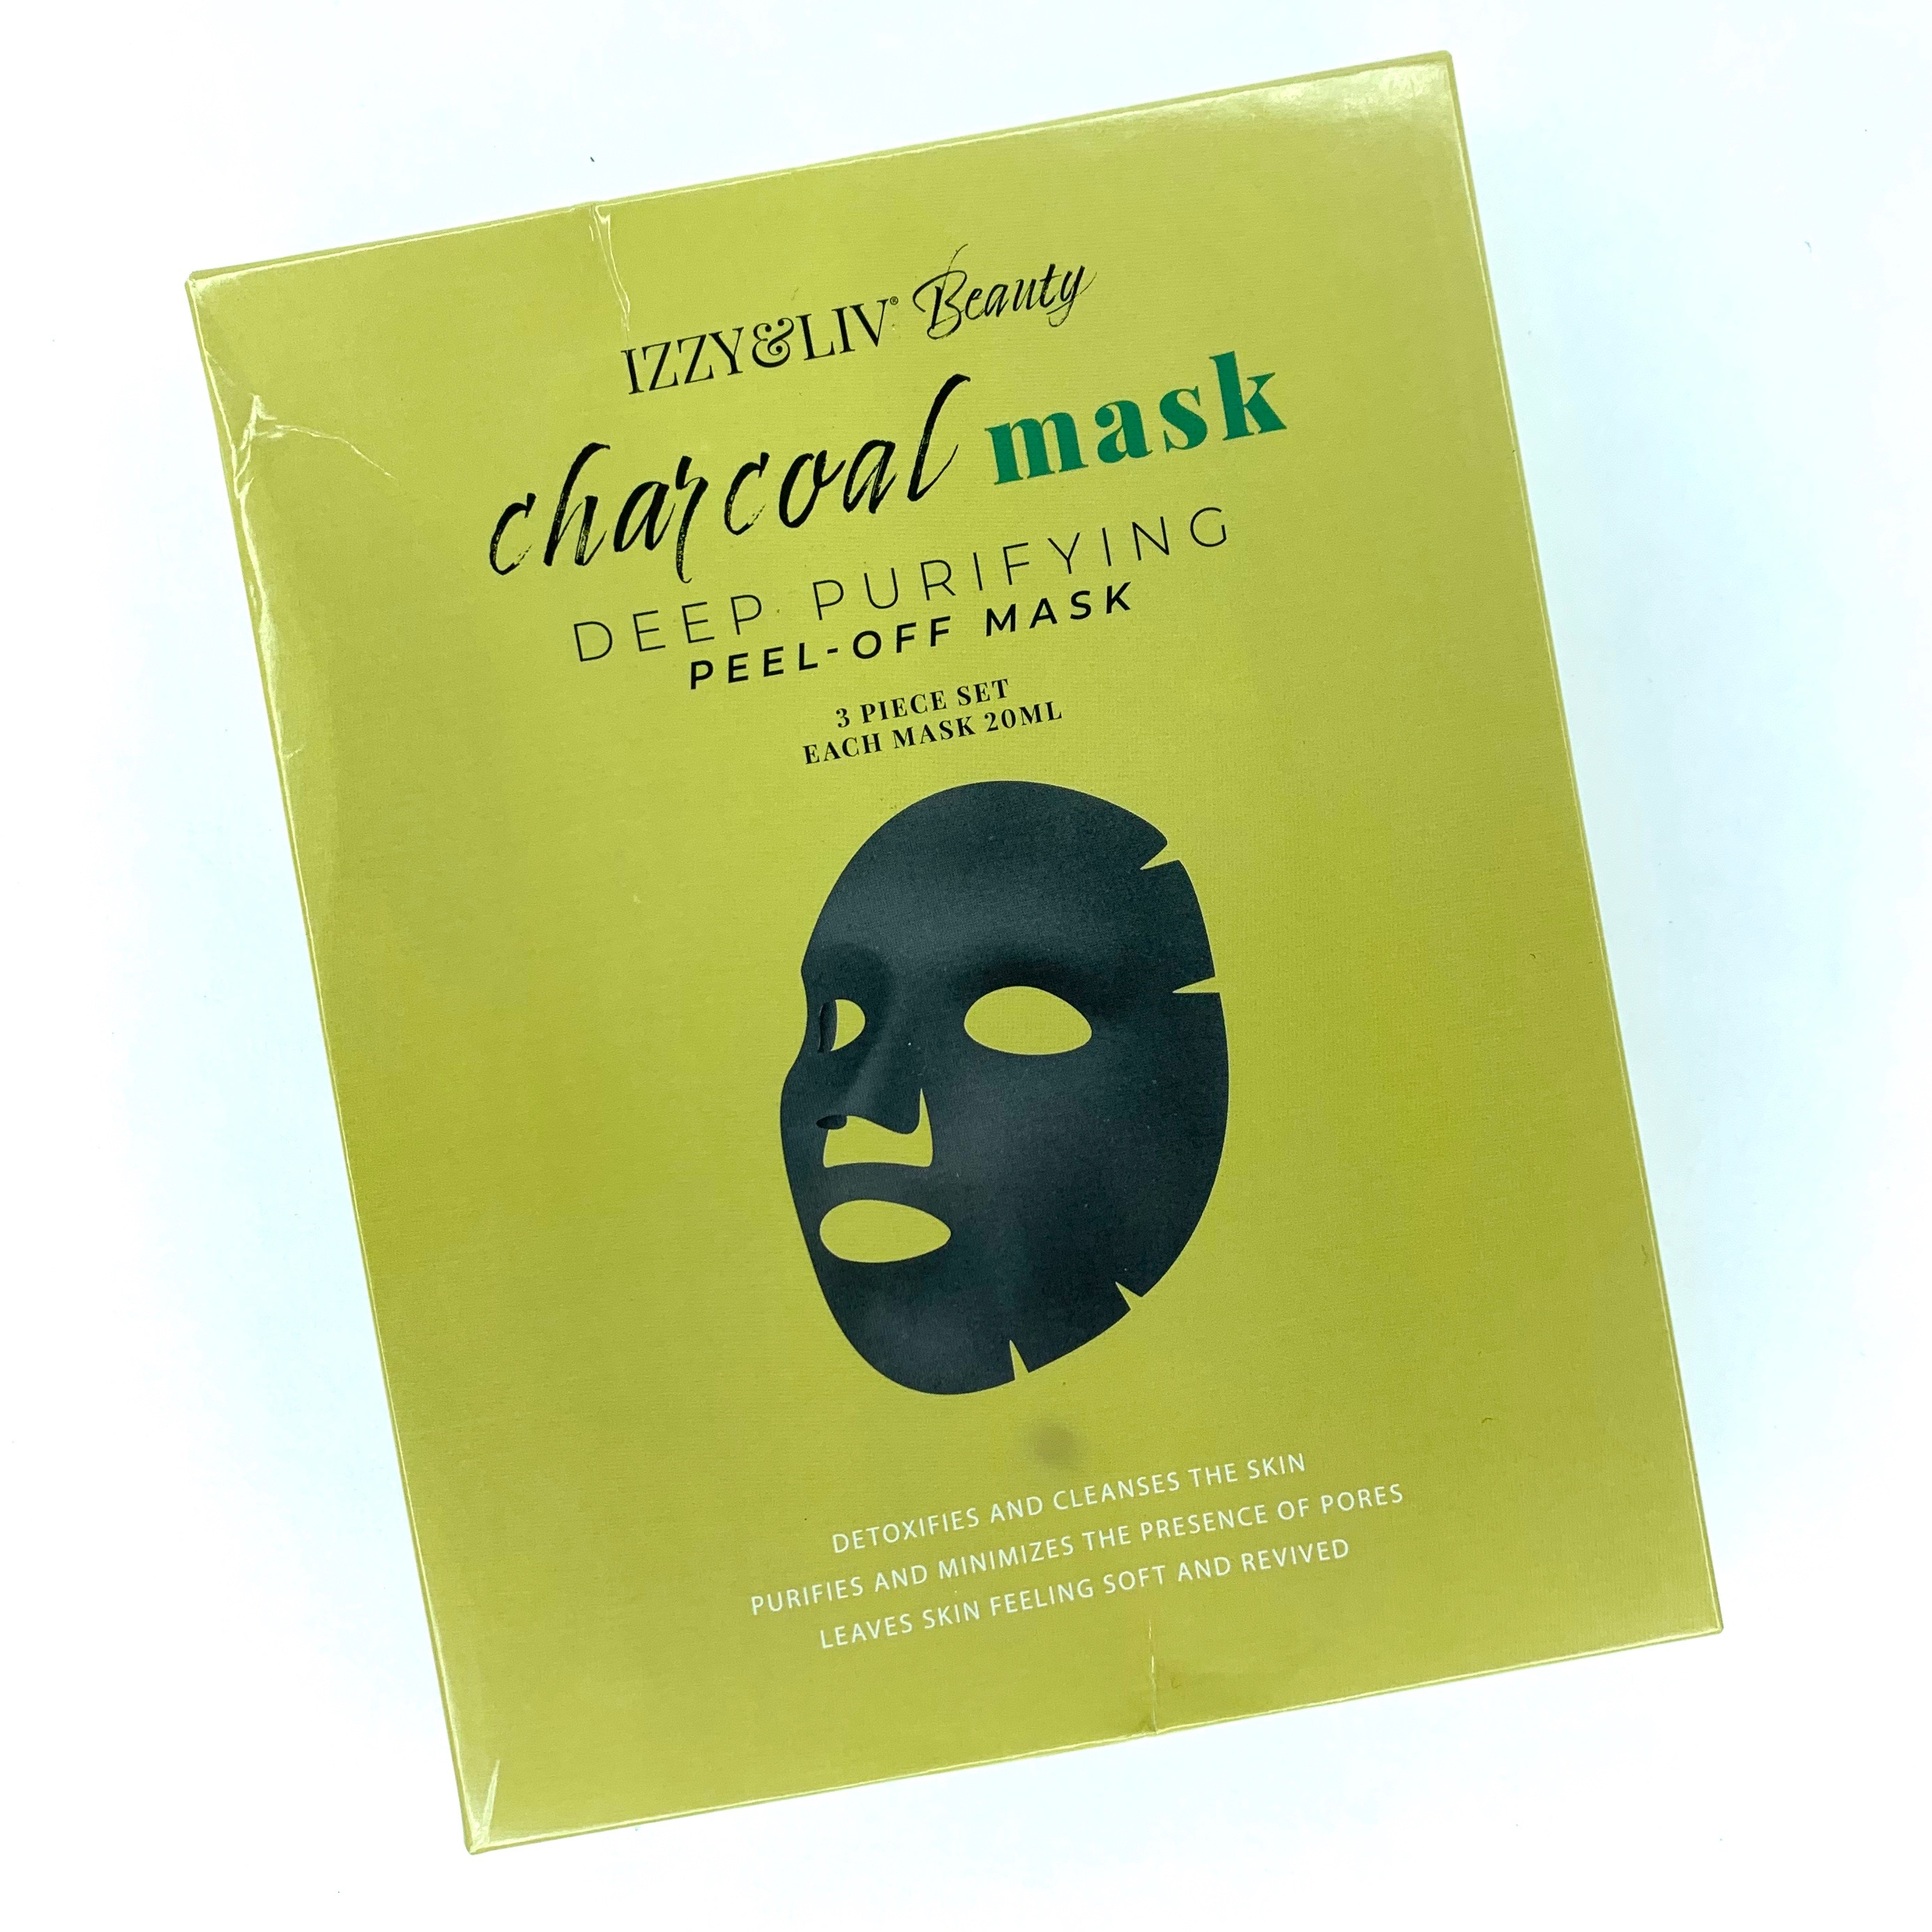 Charcoal Mask Box Front for Brown Sugar Box May 2020